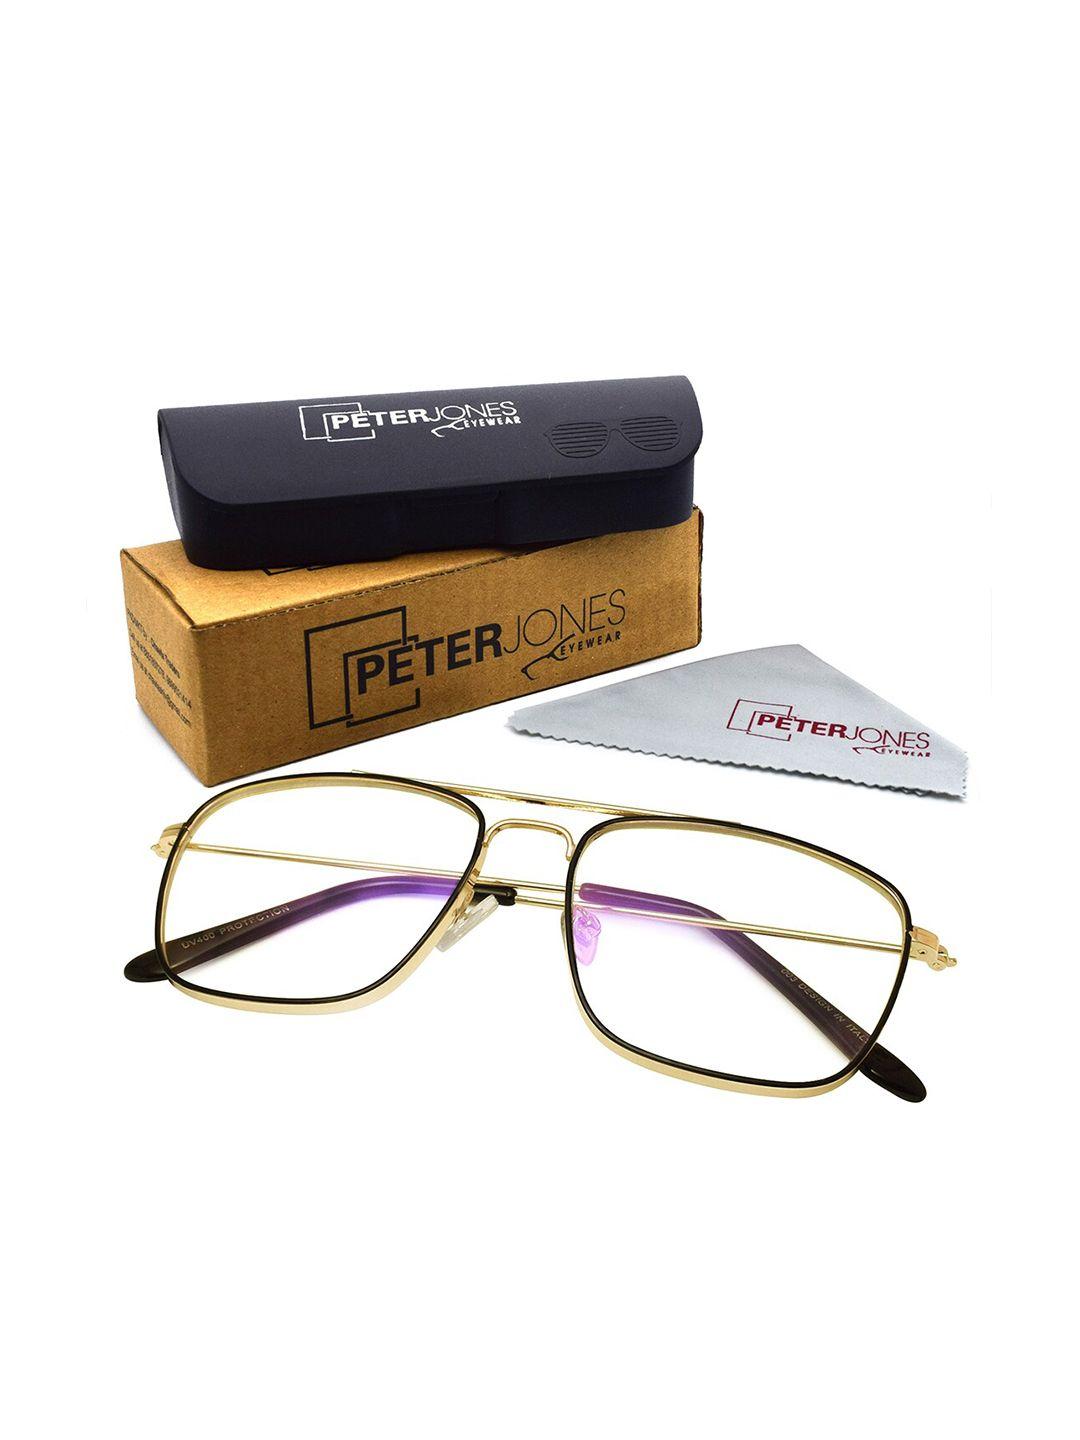 peter jones eyewear unisex full rim square frames with anti glare lenses